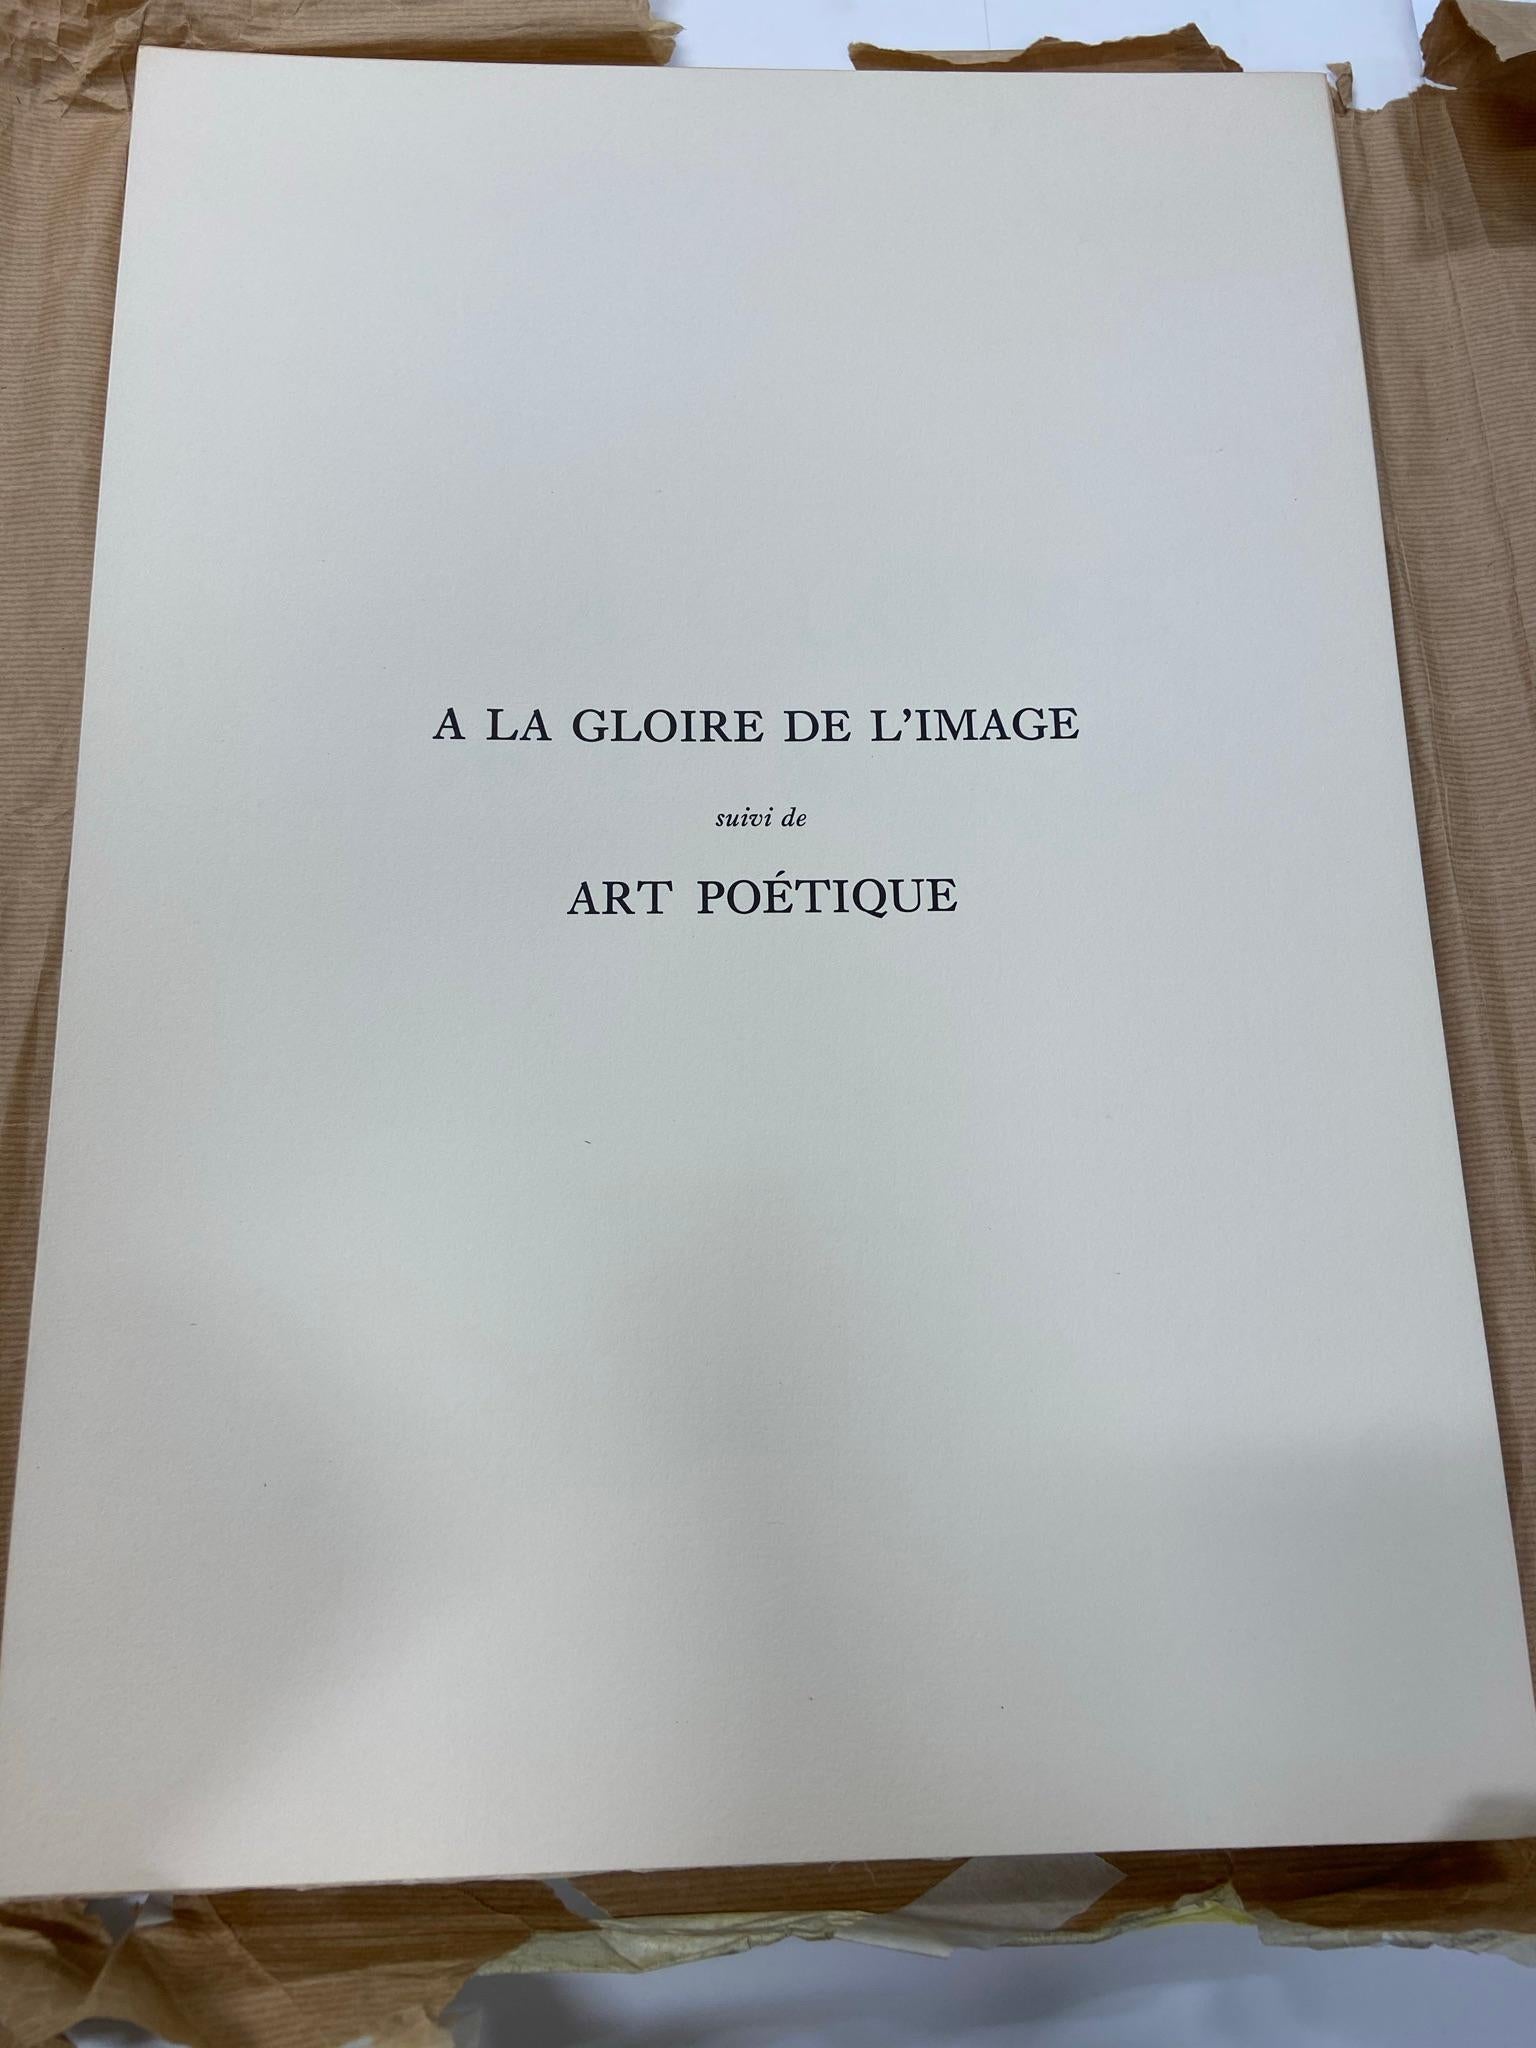  À la gloire de l'image et art poétique 15 lithographs by Zao Wou-ki  AGE271-285 - Print by Zao Wou-Ki